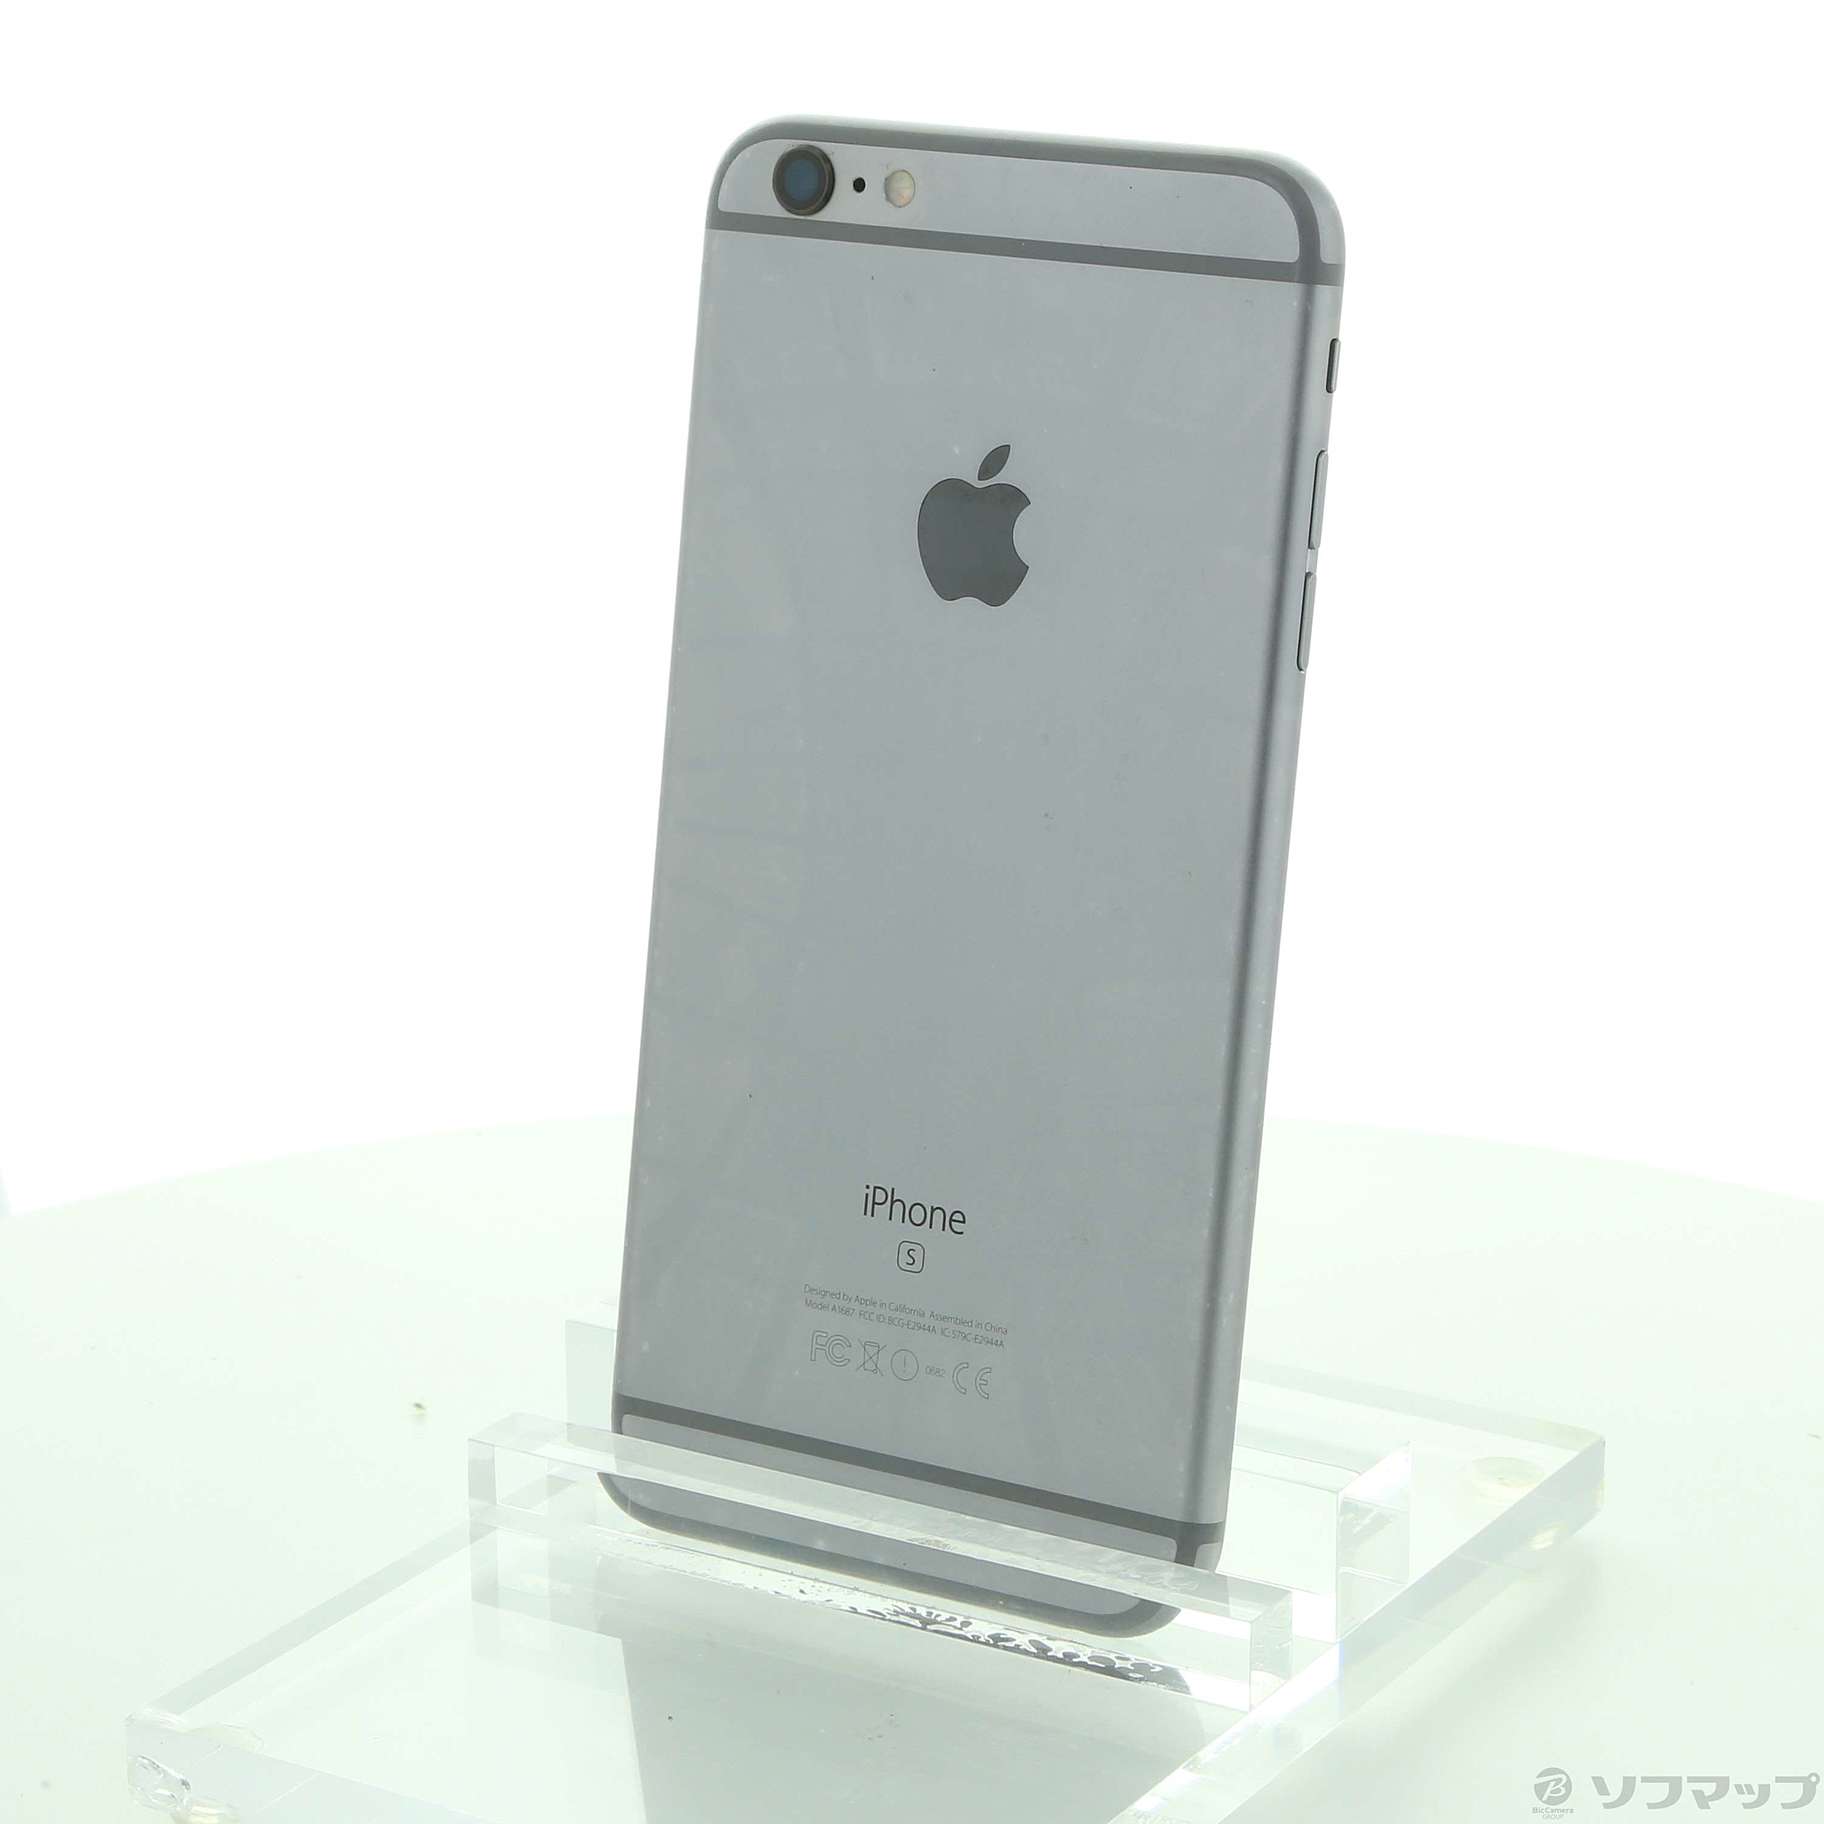 iPhone 6s Space Gray 128 GB Softbankアイフォーン - スマートフォン本体